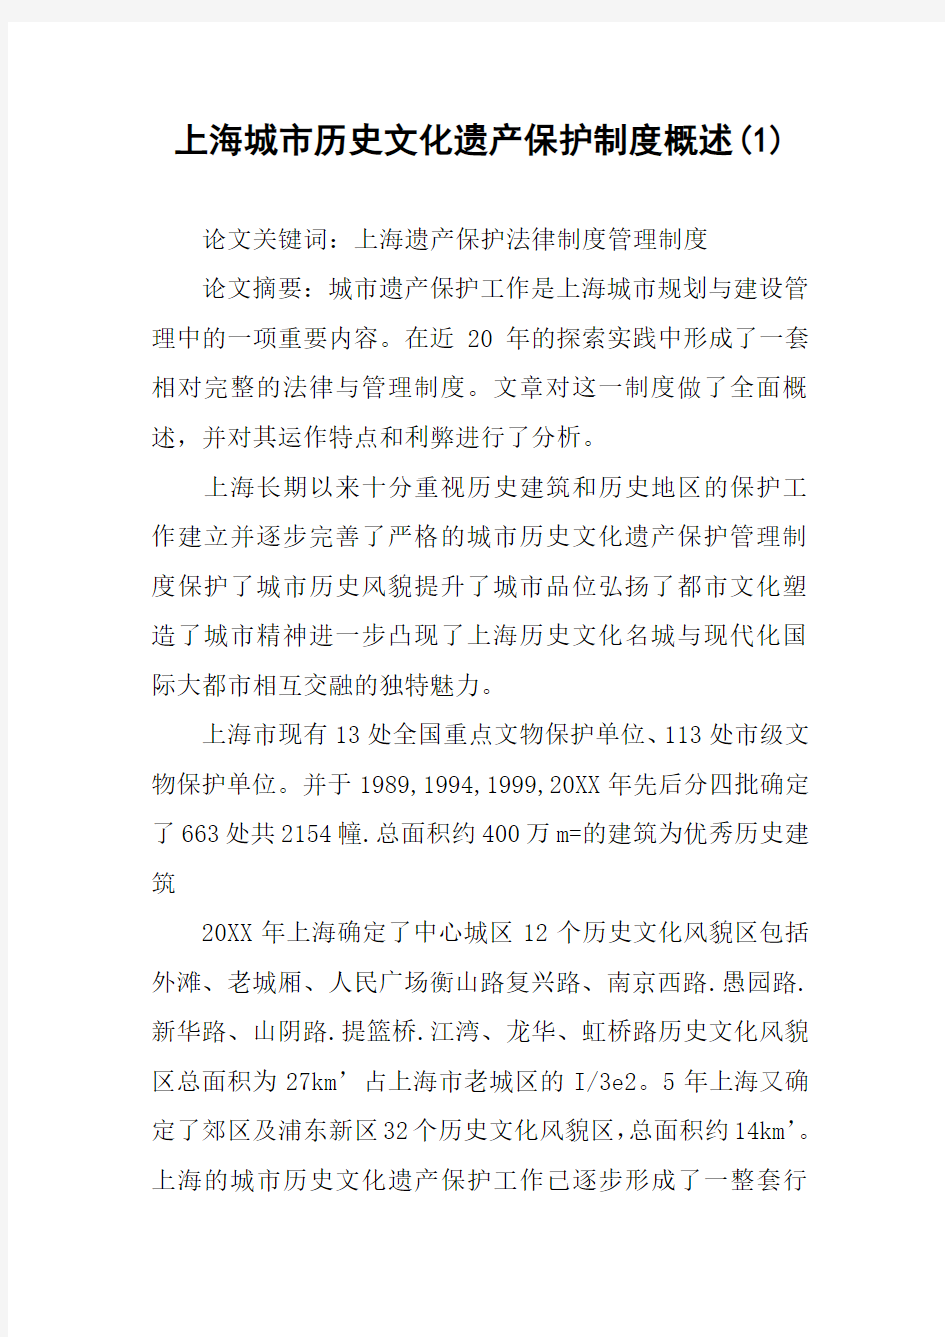 上海城市历史文化遗产保护制度概述(1)